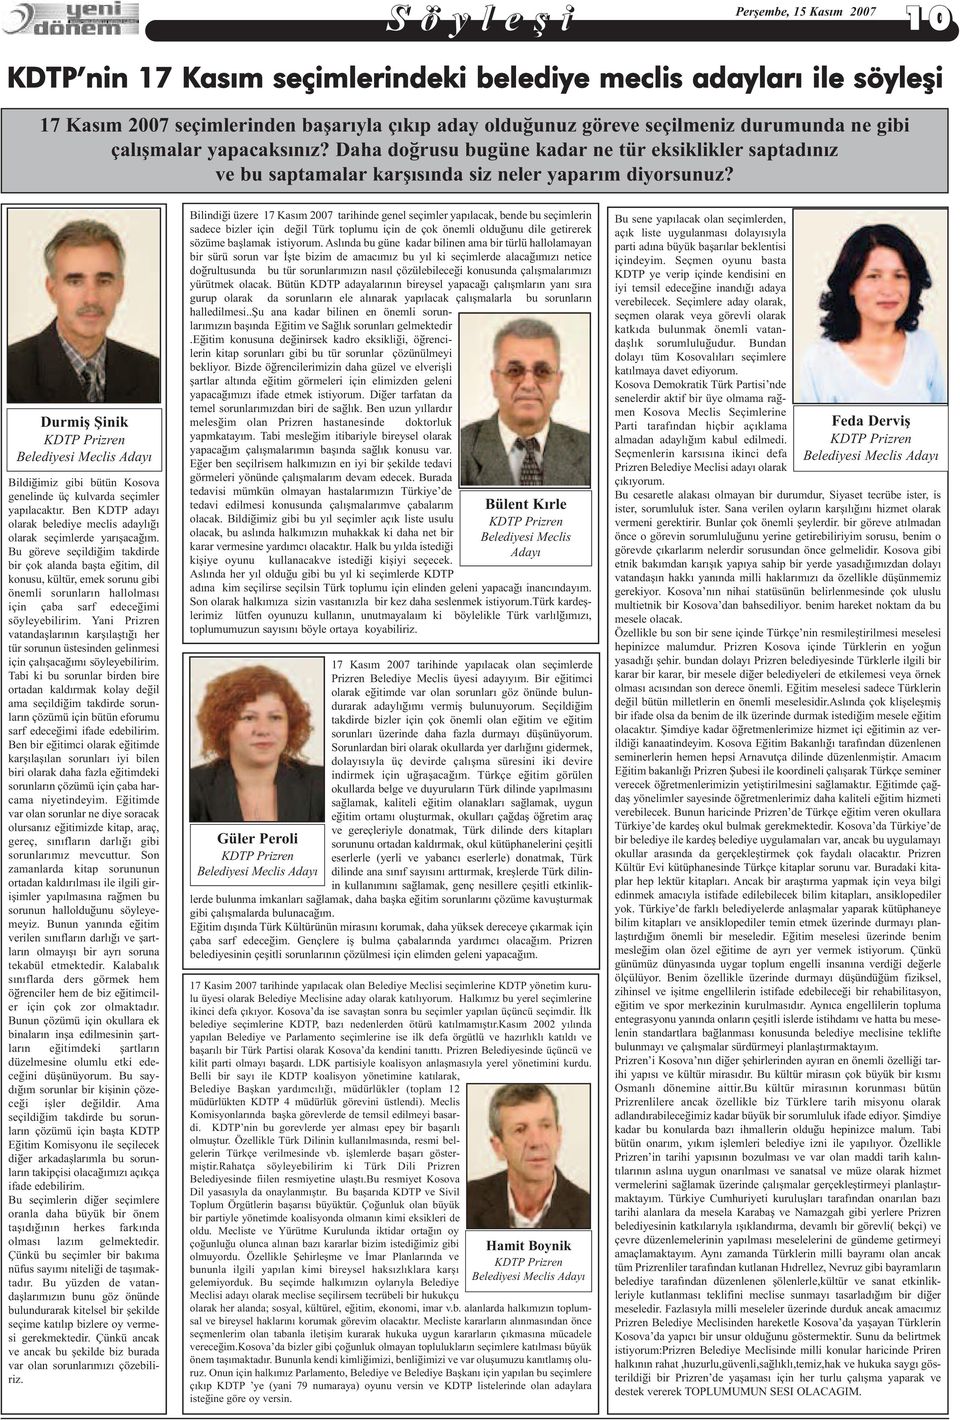 Durmiş Şinik KDTP Prizren Belediyesi Meclis Adayý Bildiðimiz gibi bütün Kosova genelinde üç kulvarda seçimler yapýlacaktýr.